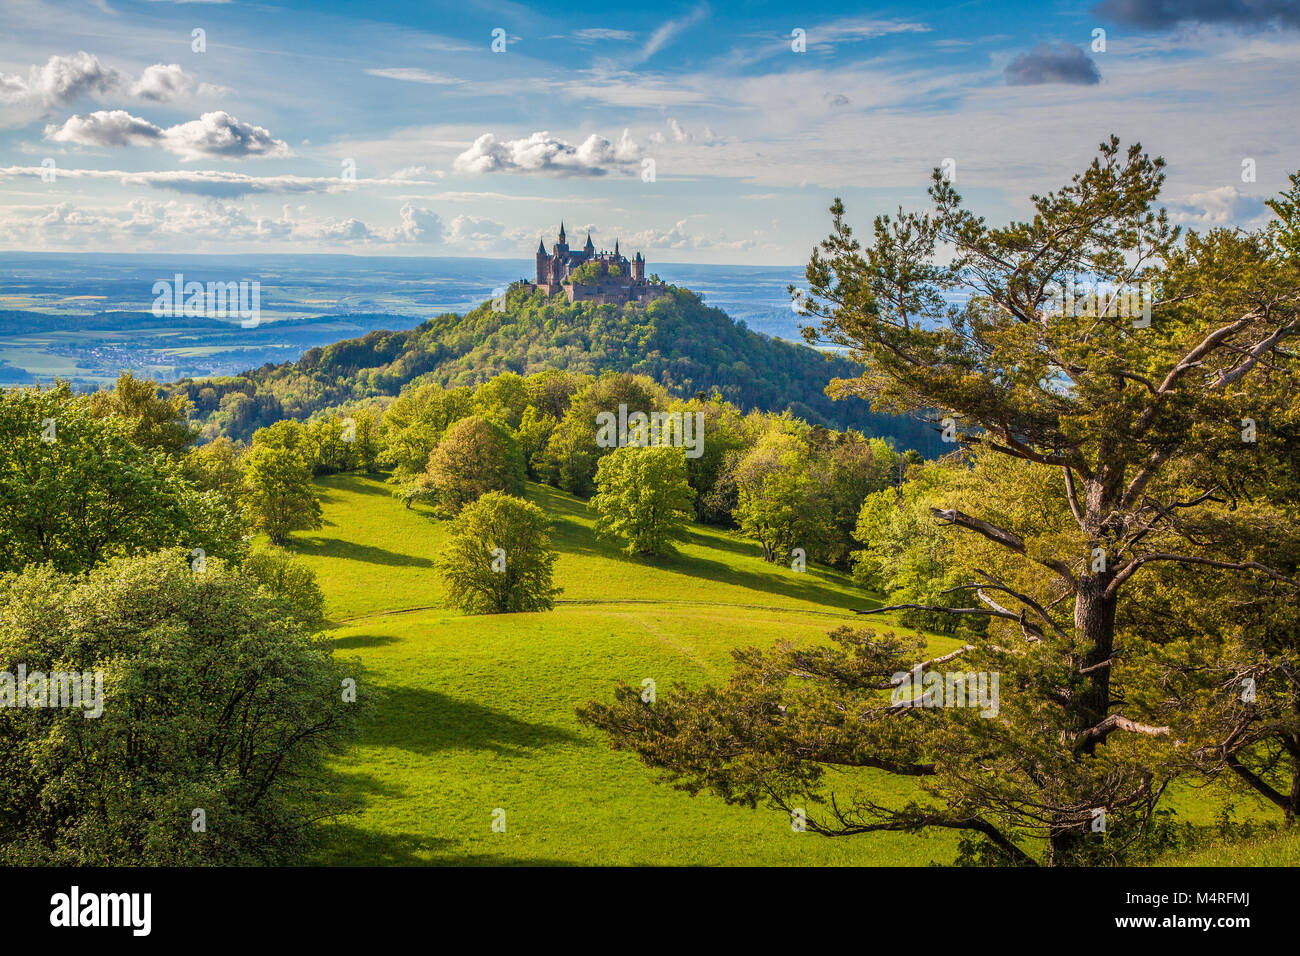 Luftaufnahme der berühmten Burg Hohenzollern, Stammsitz des kaiserlichen Hauses Hohenzollern und eine der meist besuchten Burgen, Deutschland Stockfoto